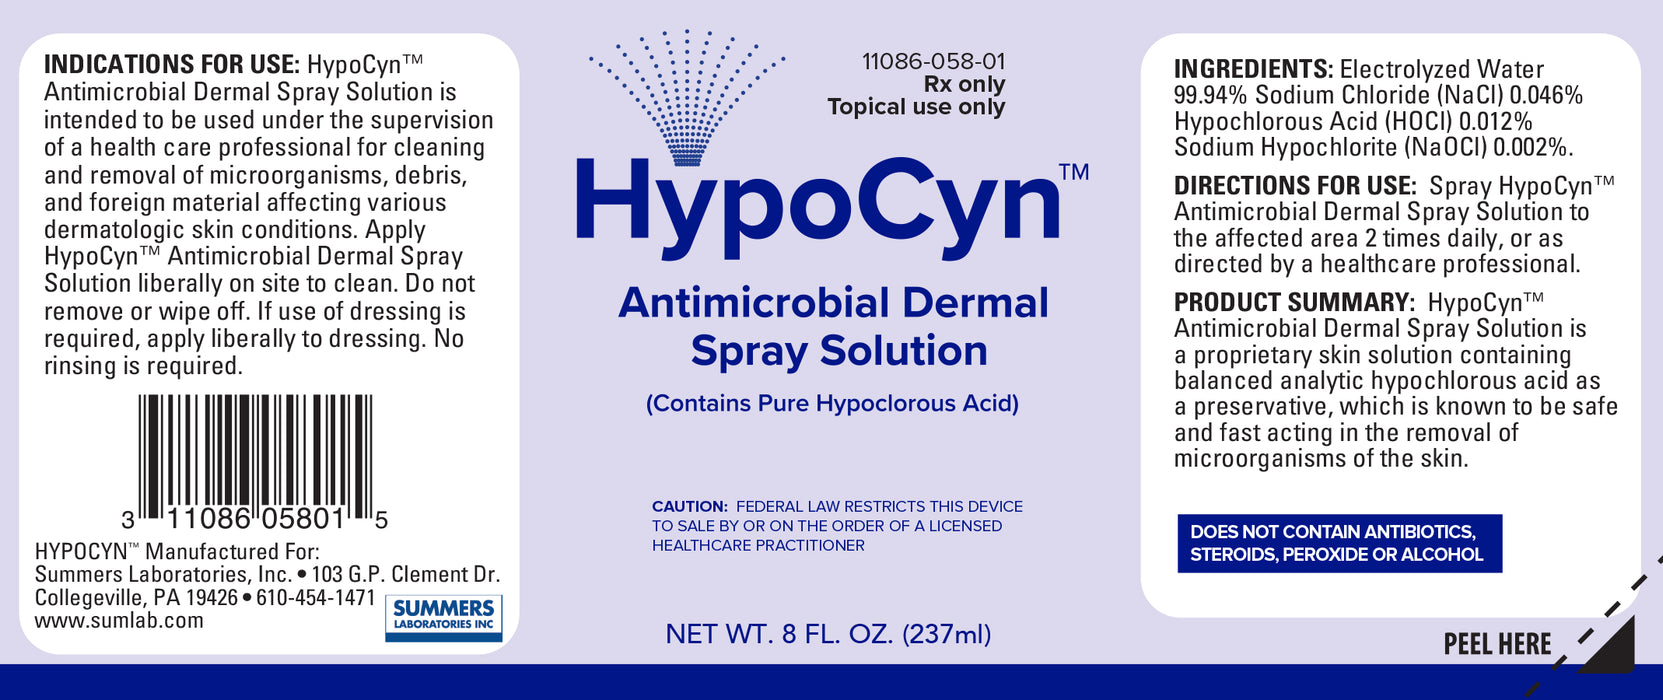 Drug Facts Label for HypoCyn Antimicrobial Dermal Spray Hypochlorous Solution